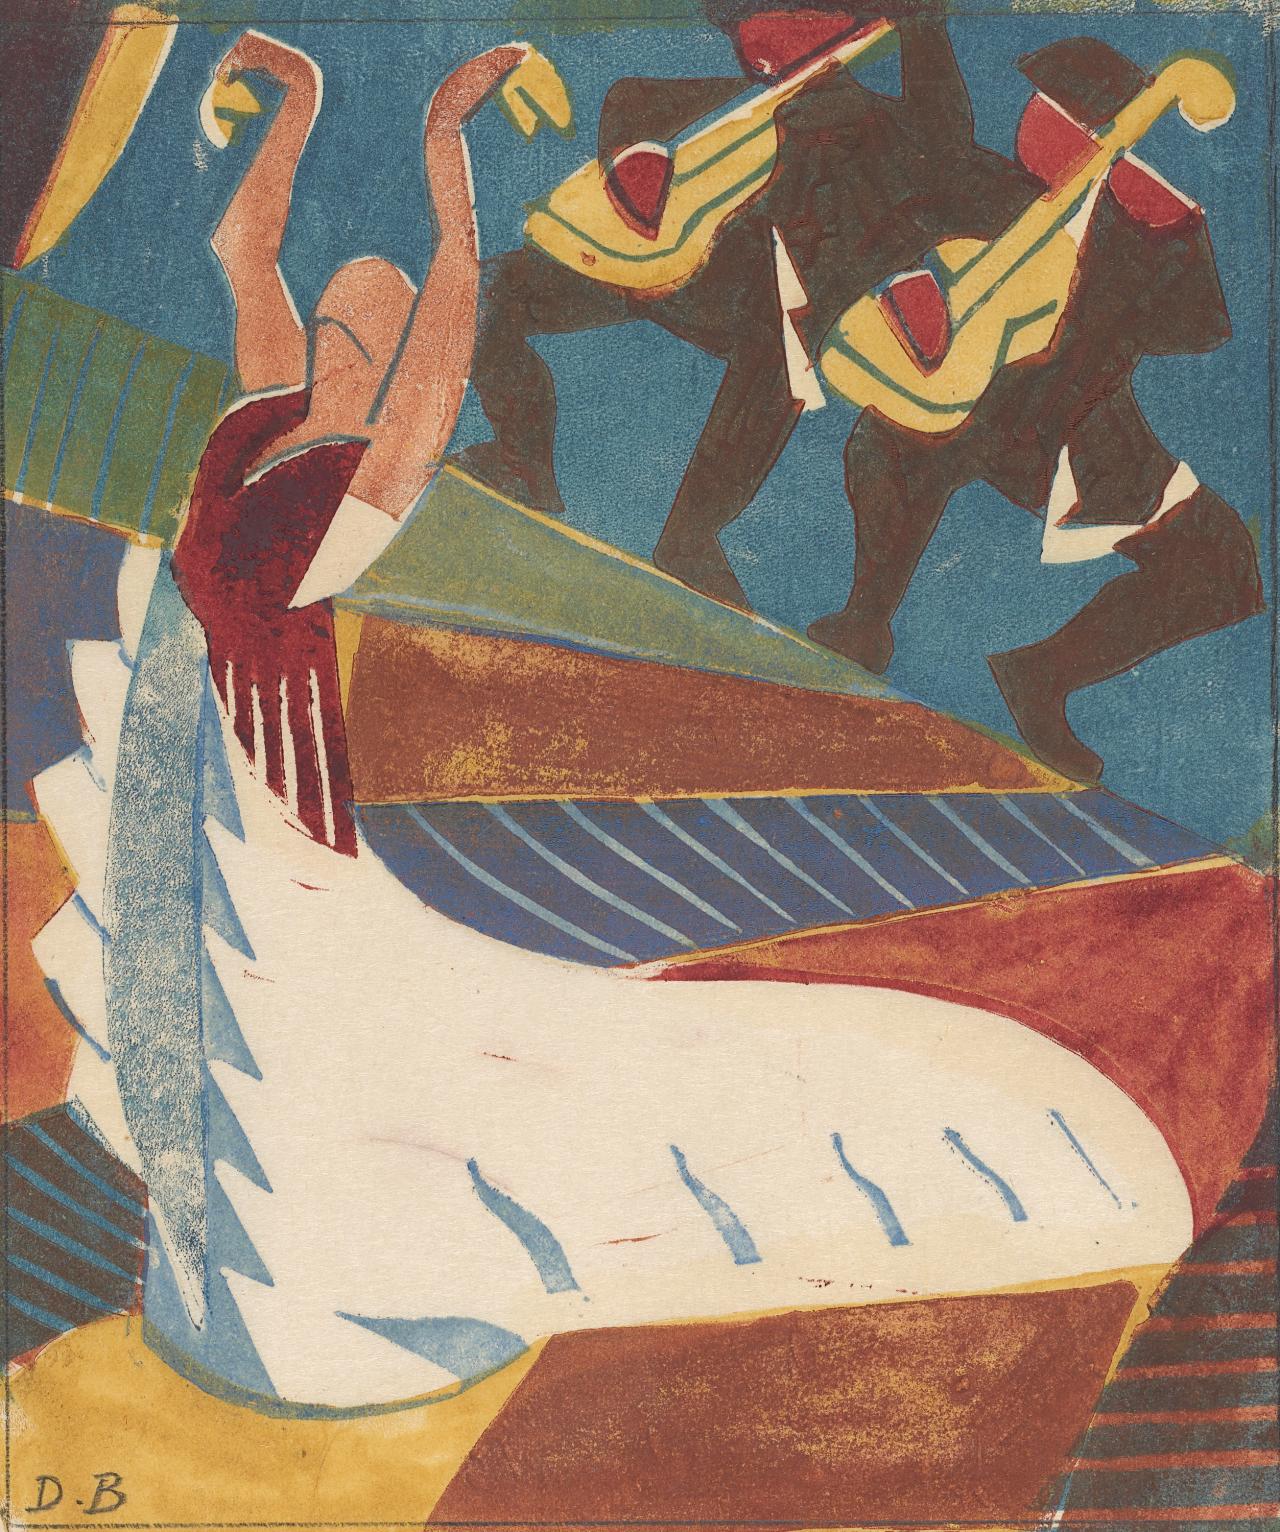 Argentína (Spanyol táncosnő) by Dorrit Black - 1929 körül - 18,8 × 16,0 cm 